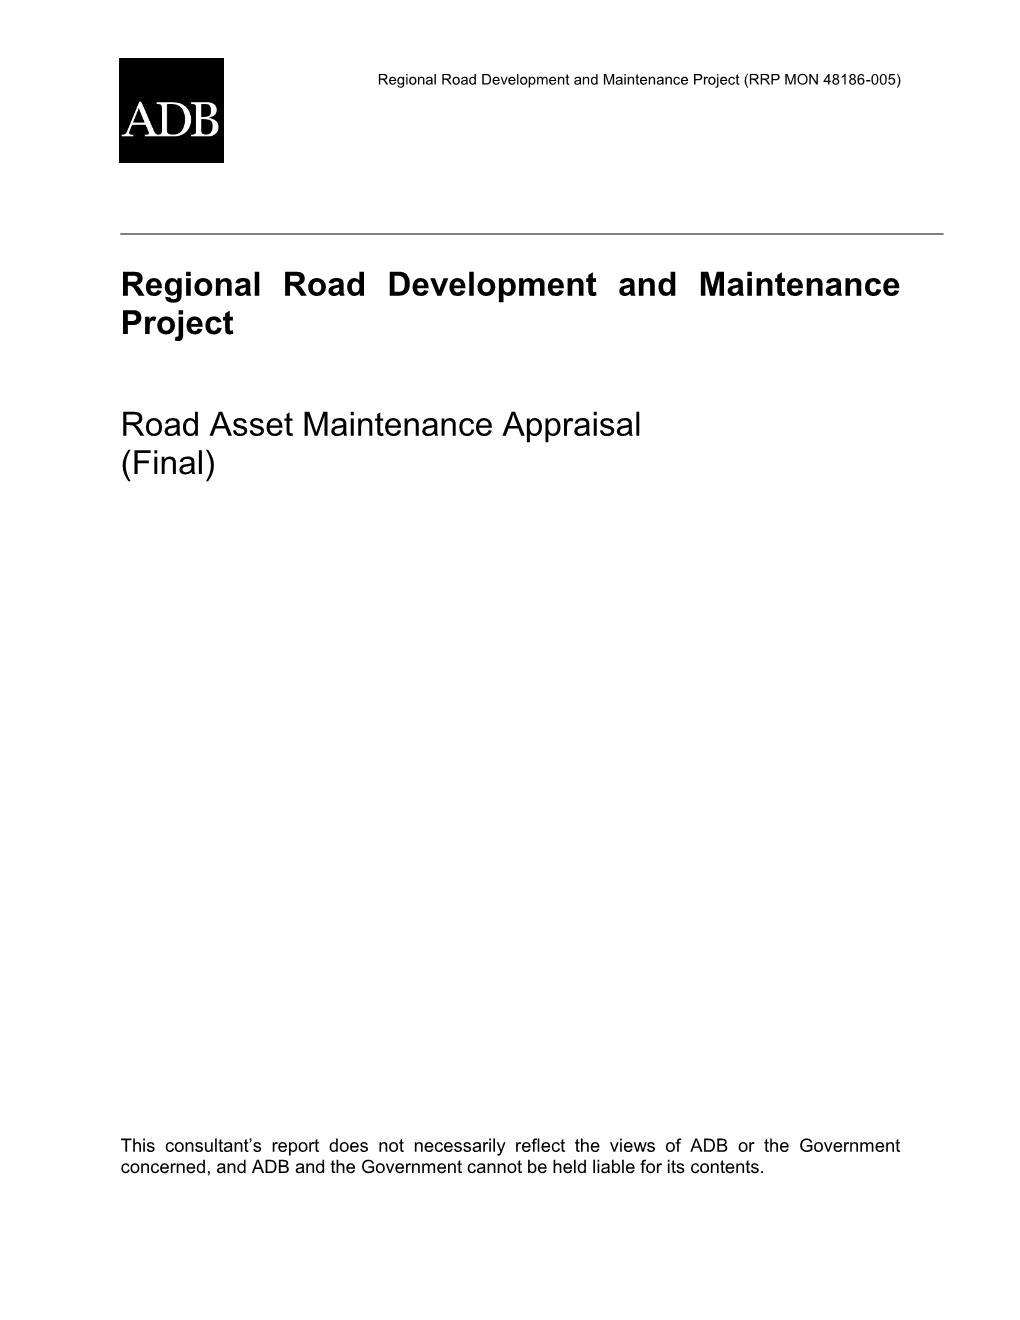 Road Asset Maintenance Appraisal (Final)